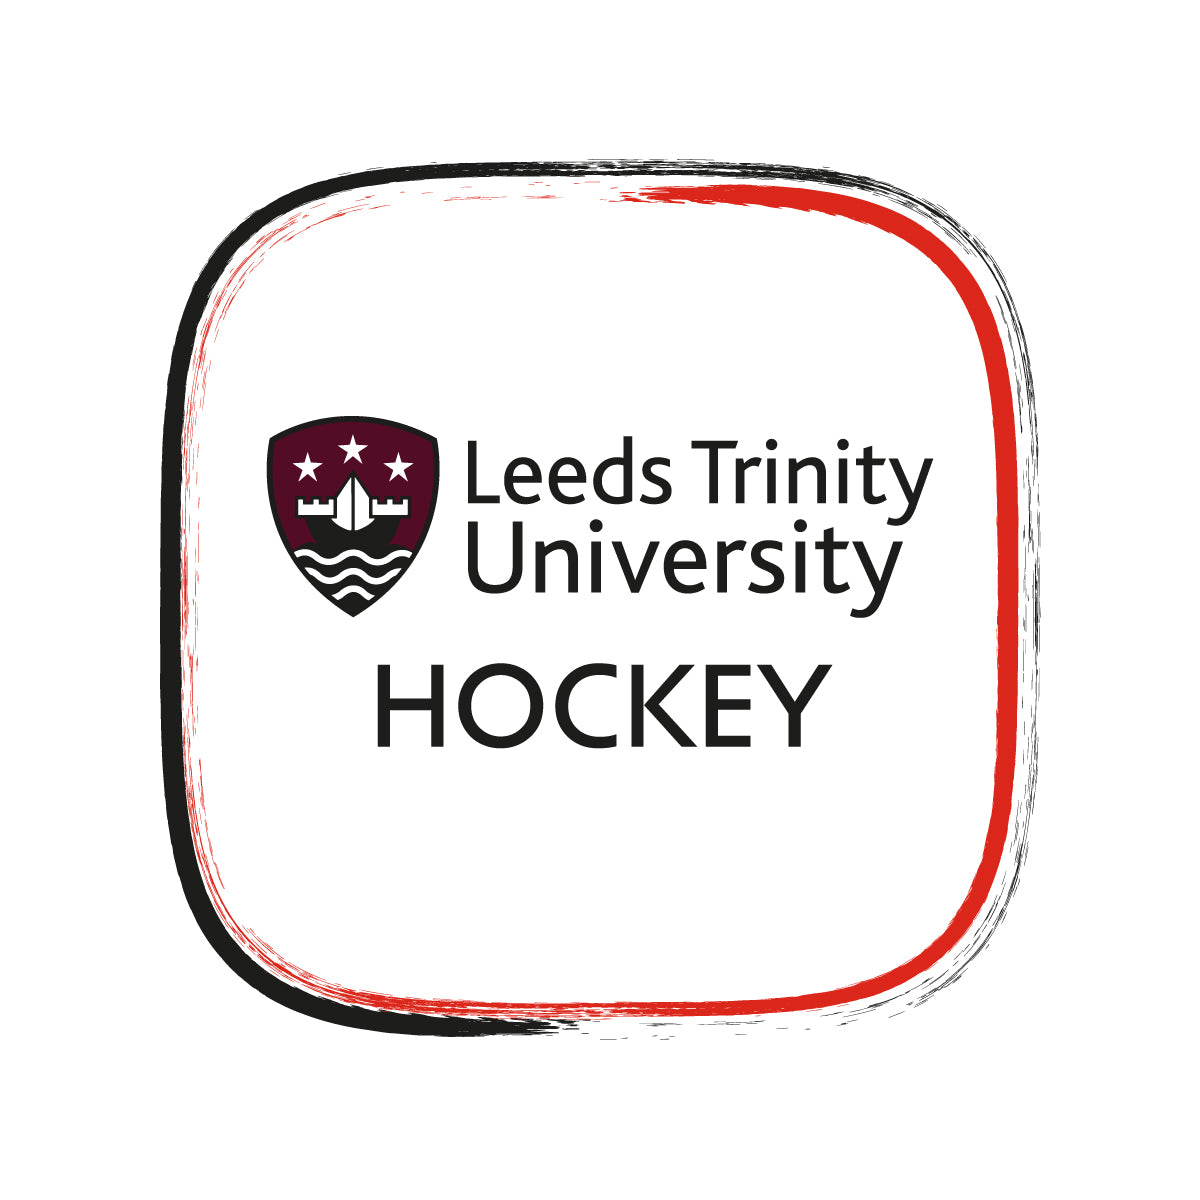 Leeds Trinity University Hockey